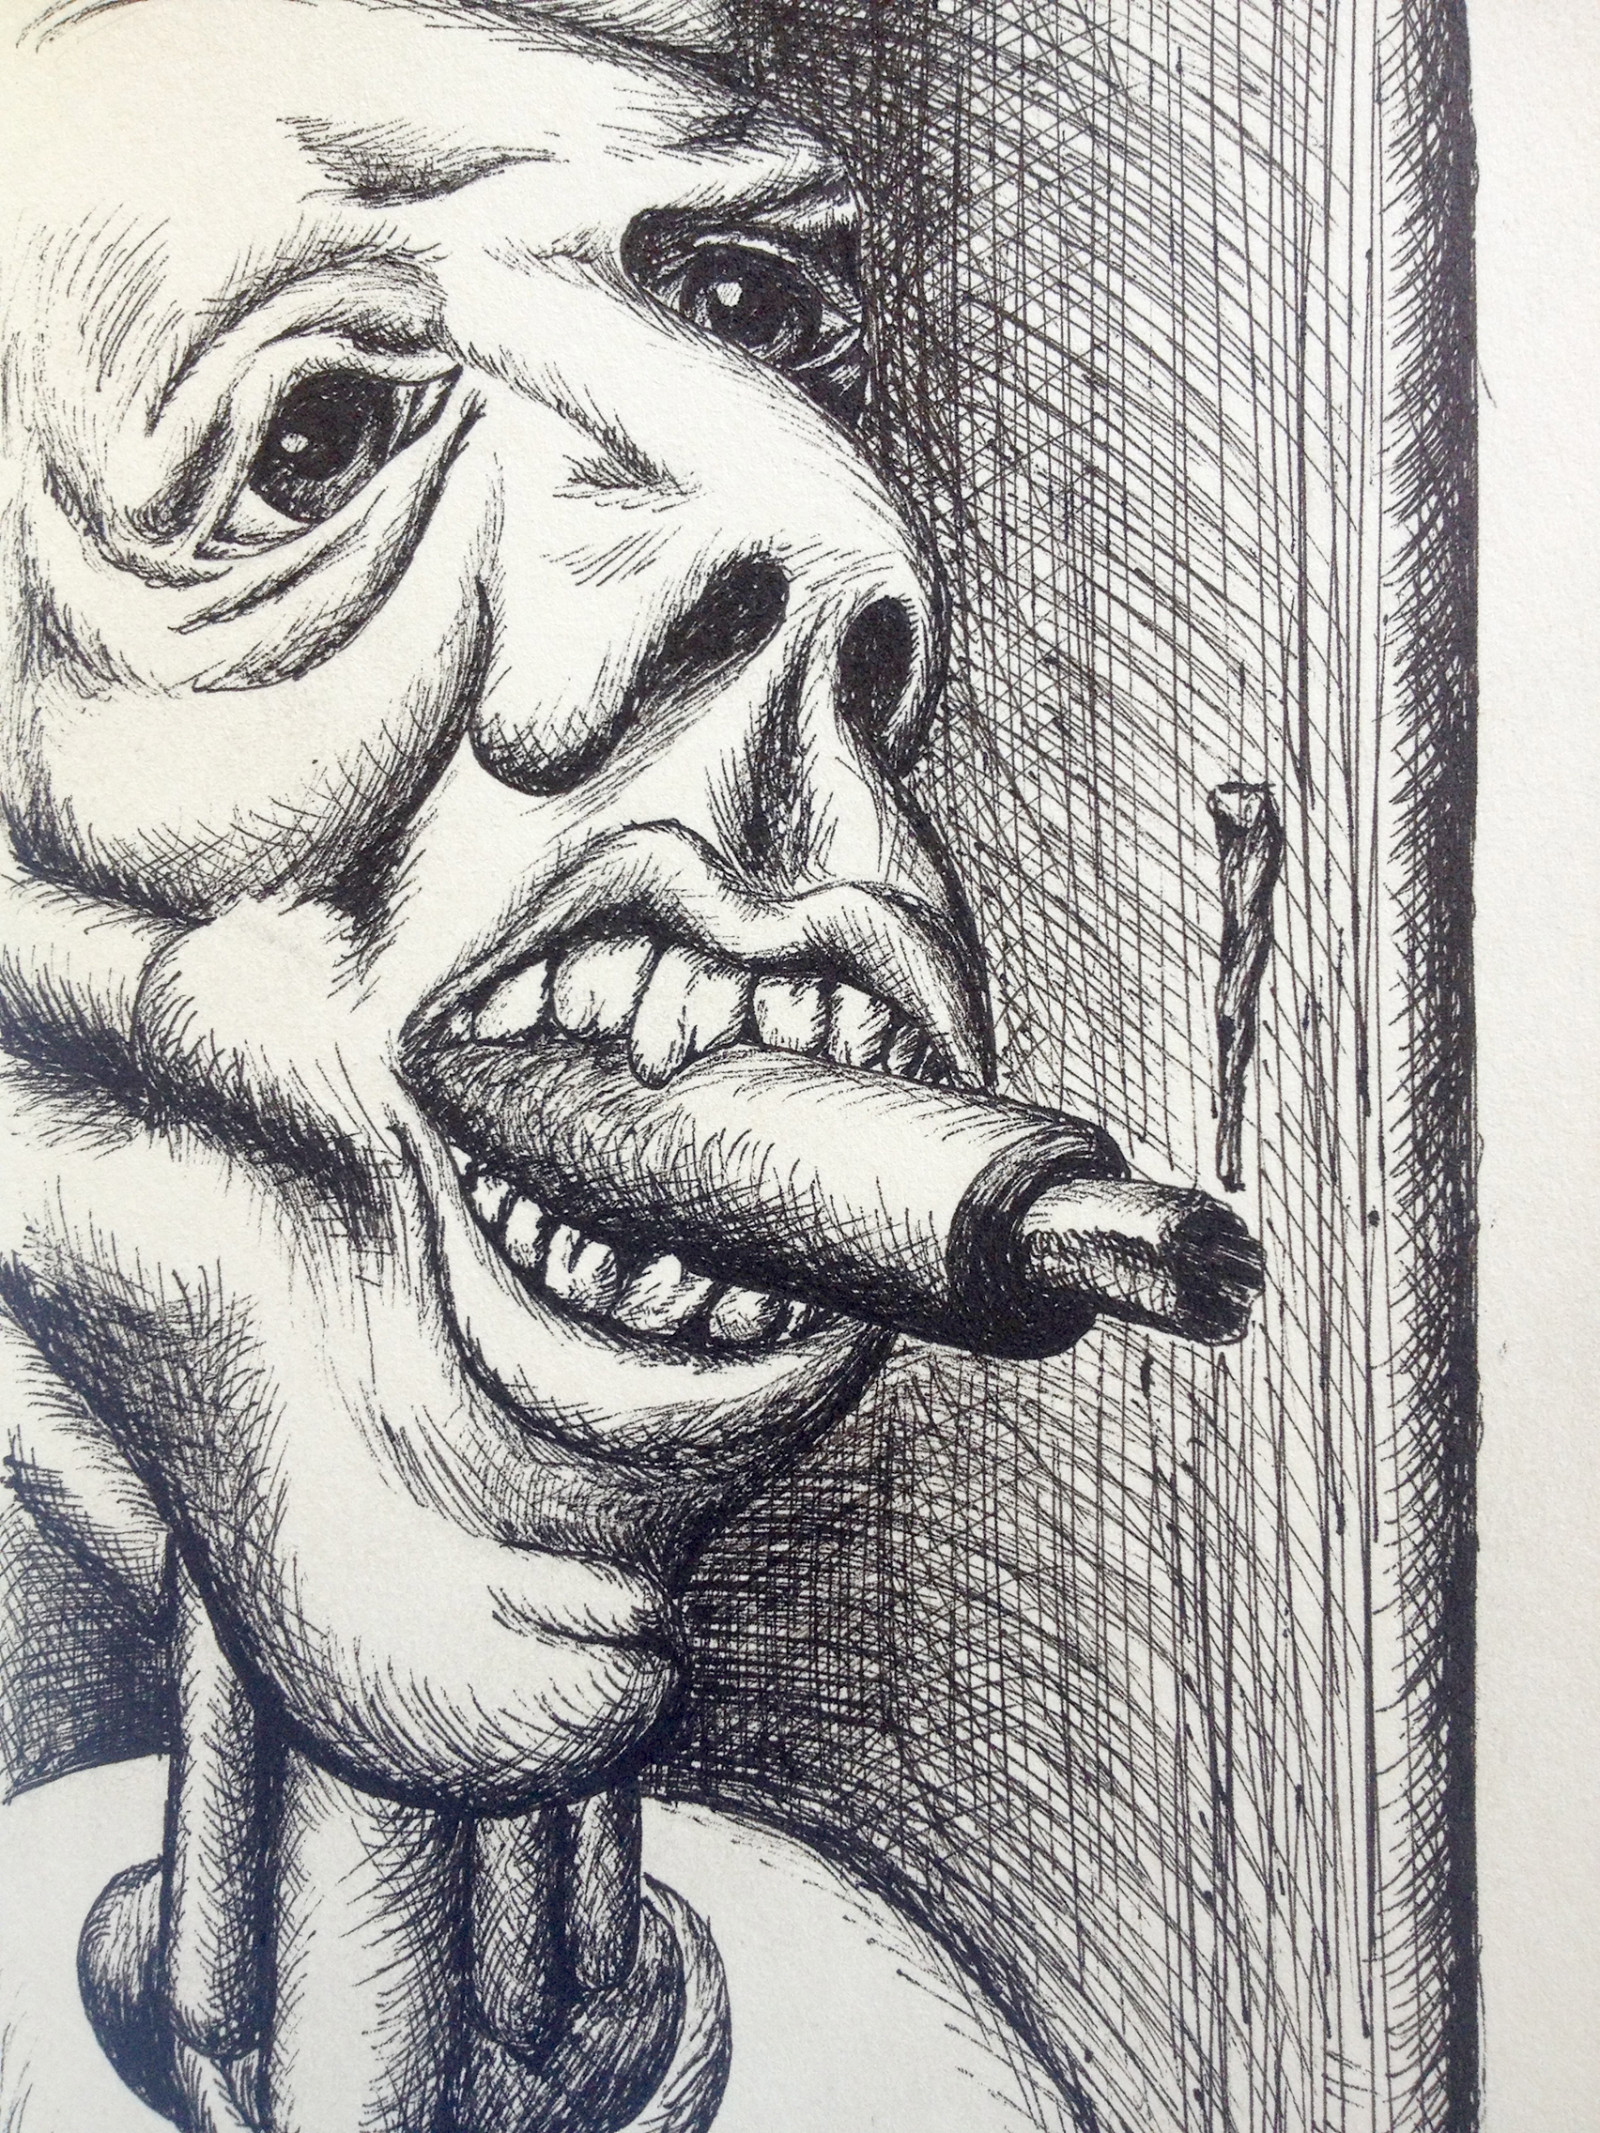 man-stops-smoking-black-and-white-pen-drawing